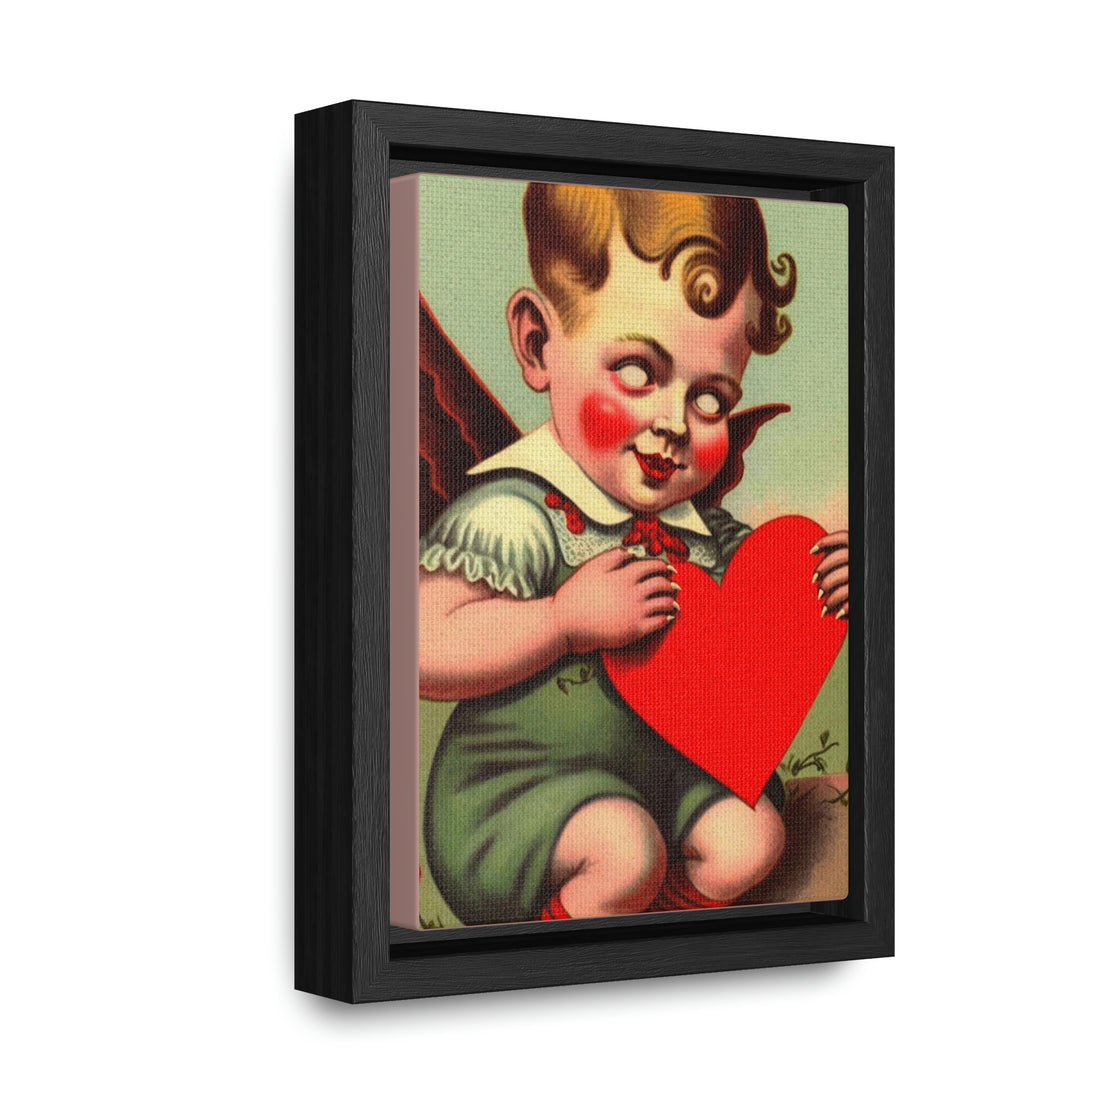 Lil Demon Boy Framed Mini Canvas